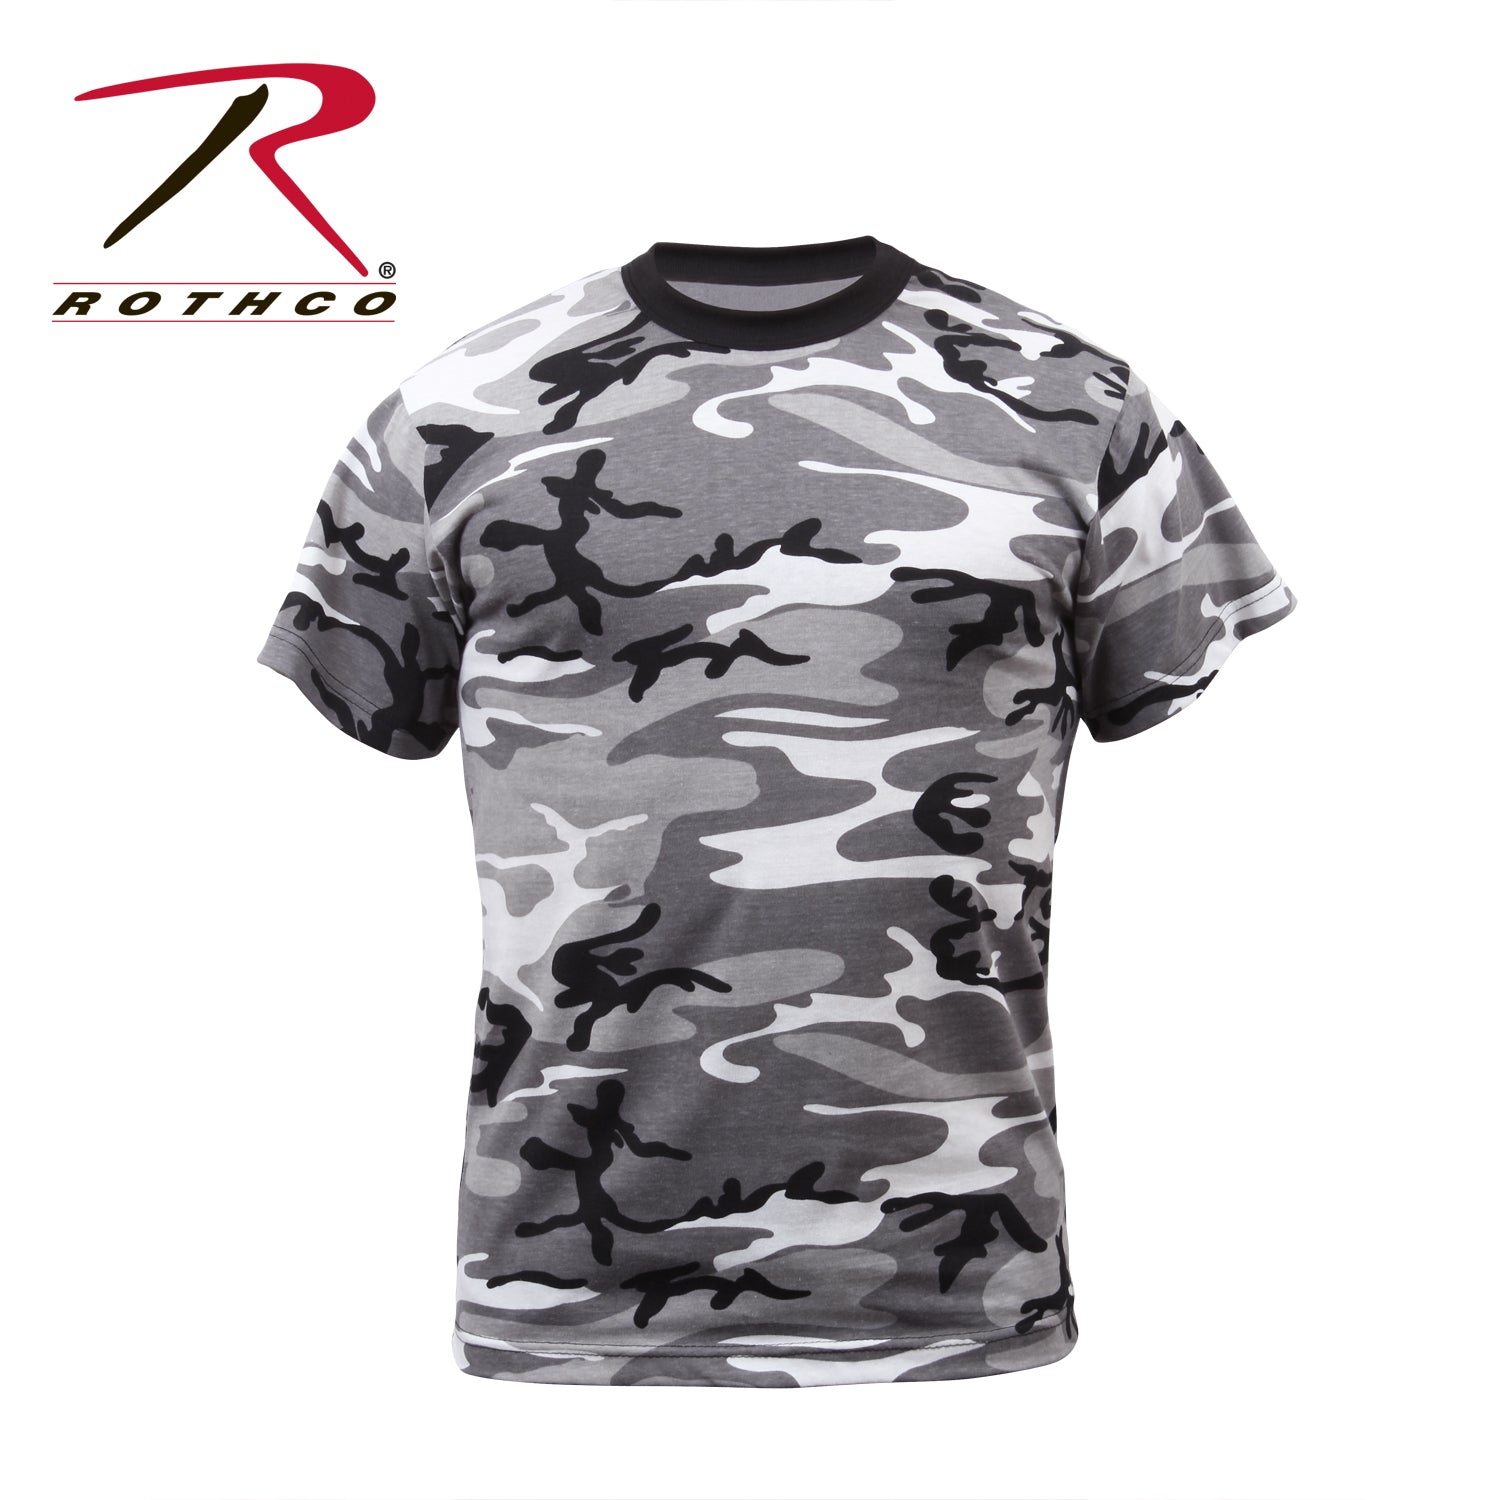 Rothco Color Camo T-Shirt